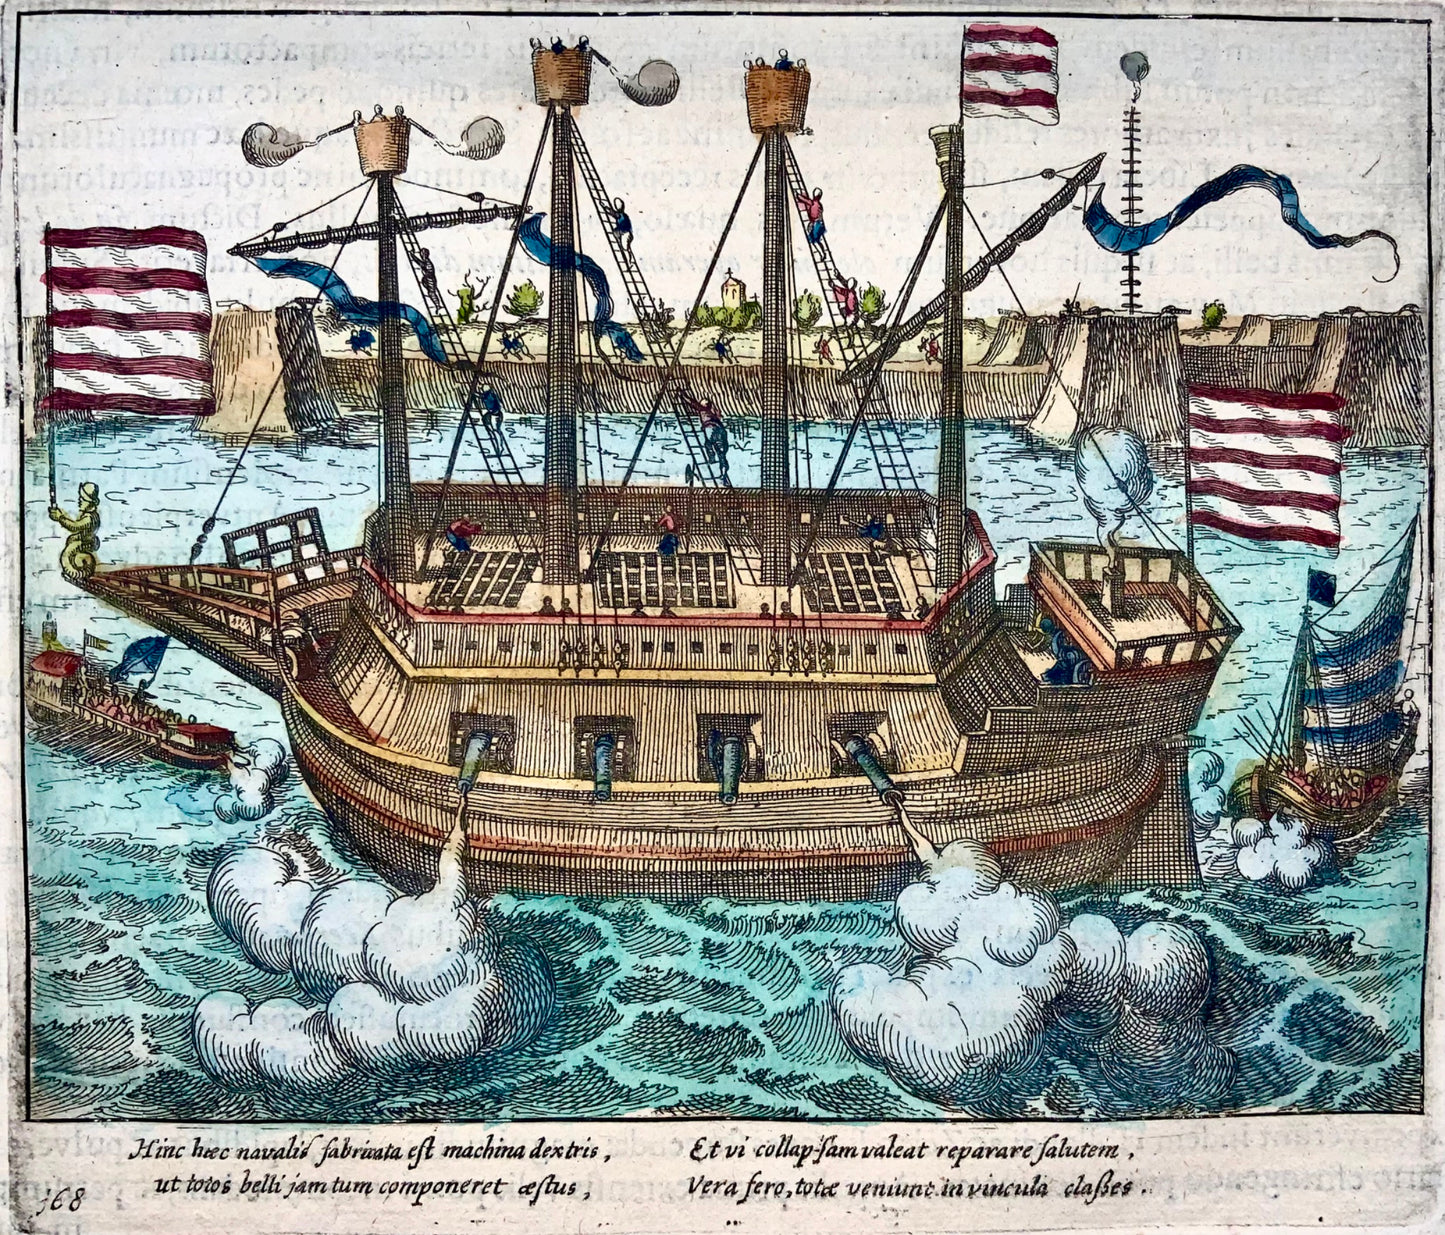 1622 Frans Hogenberg, navire blindé 'Fin de la guerre', fine gravure sur cuivre, histoire militaire